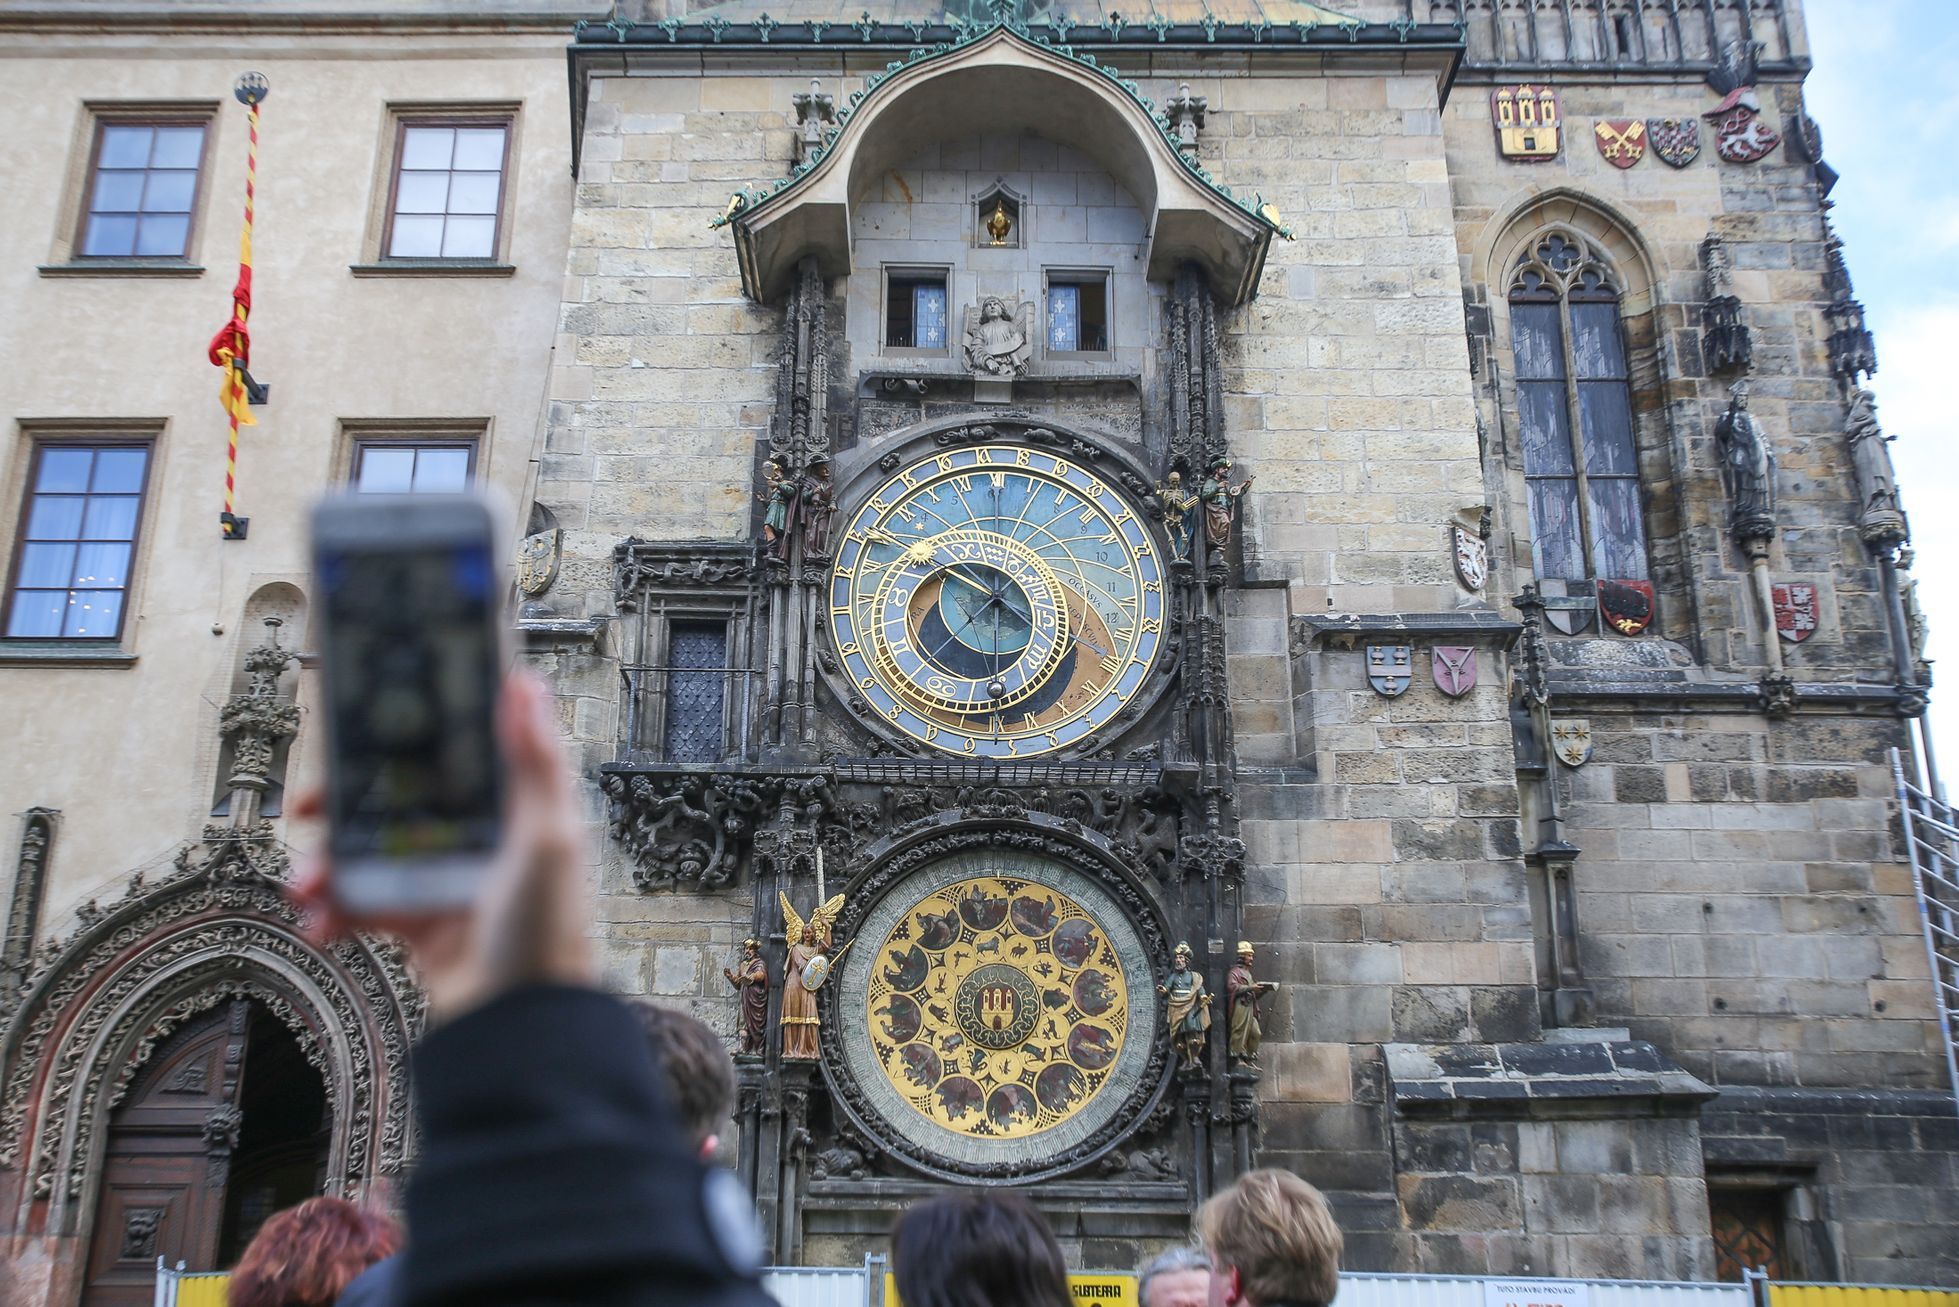 Staroměstská radnice a orloj se začíná opravovat, Praha